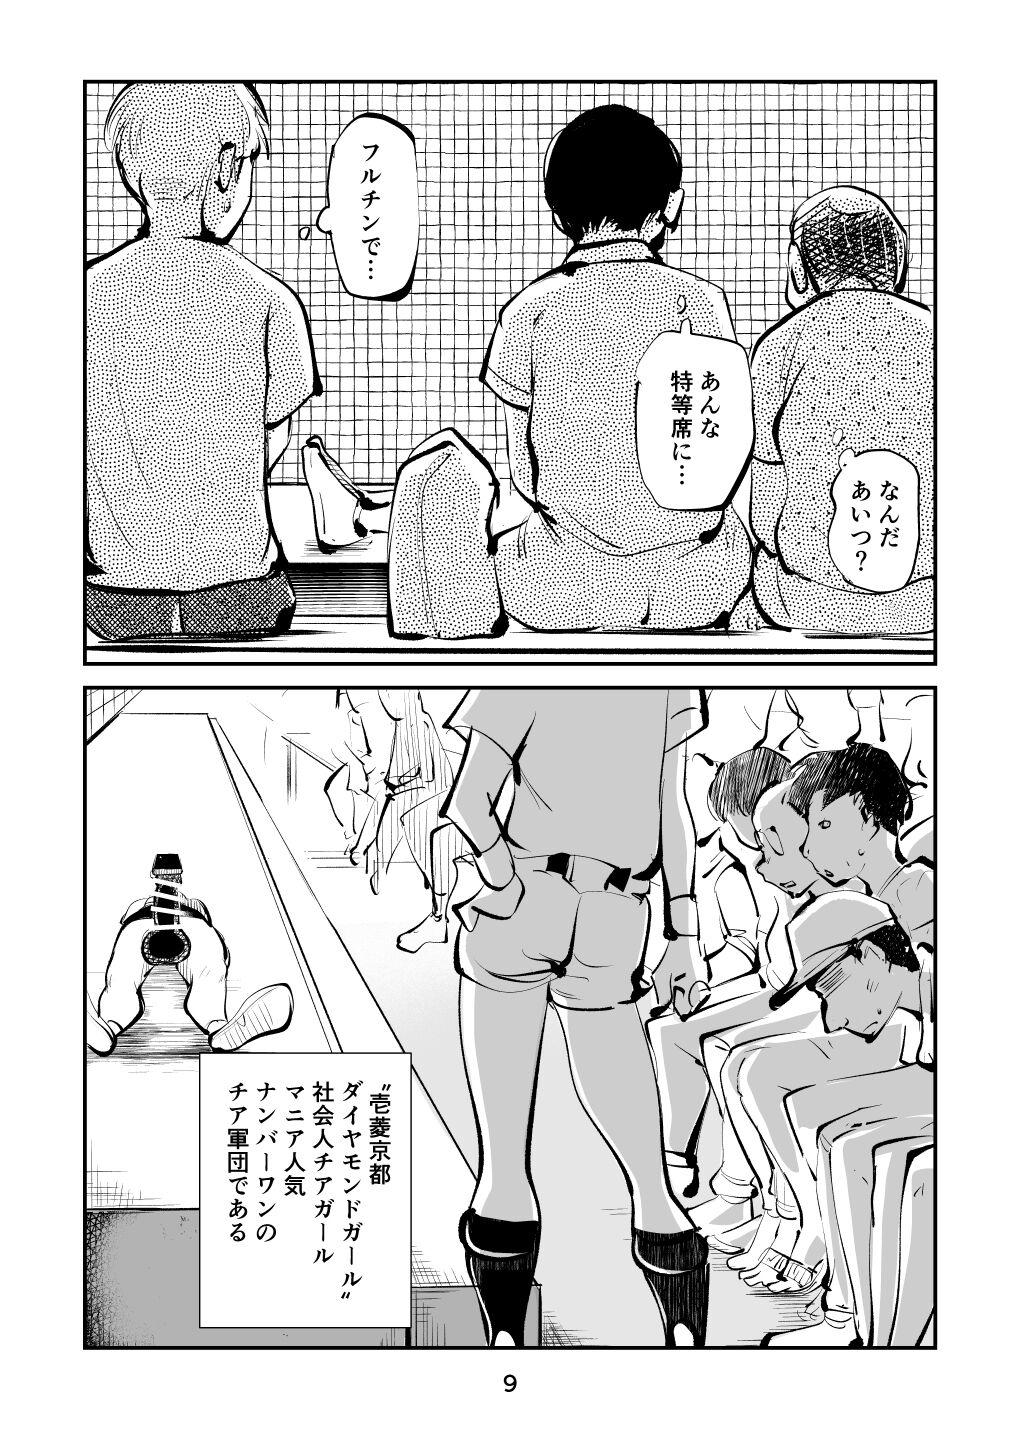 Banheiro Kinkeri Cheer Girl VS Tosatsuma Shakai Hito Cheer Girl-hen - Original Amador - Page 9